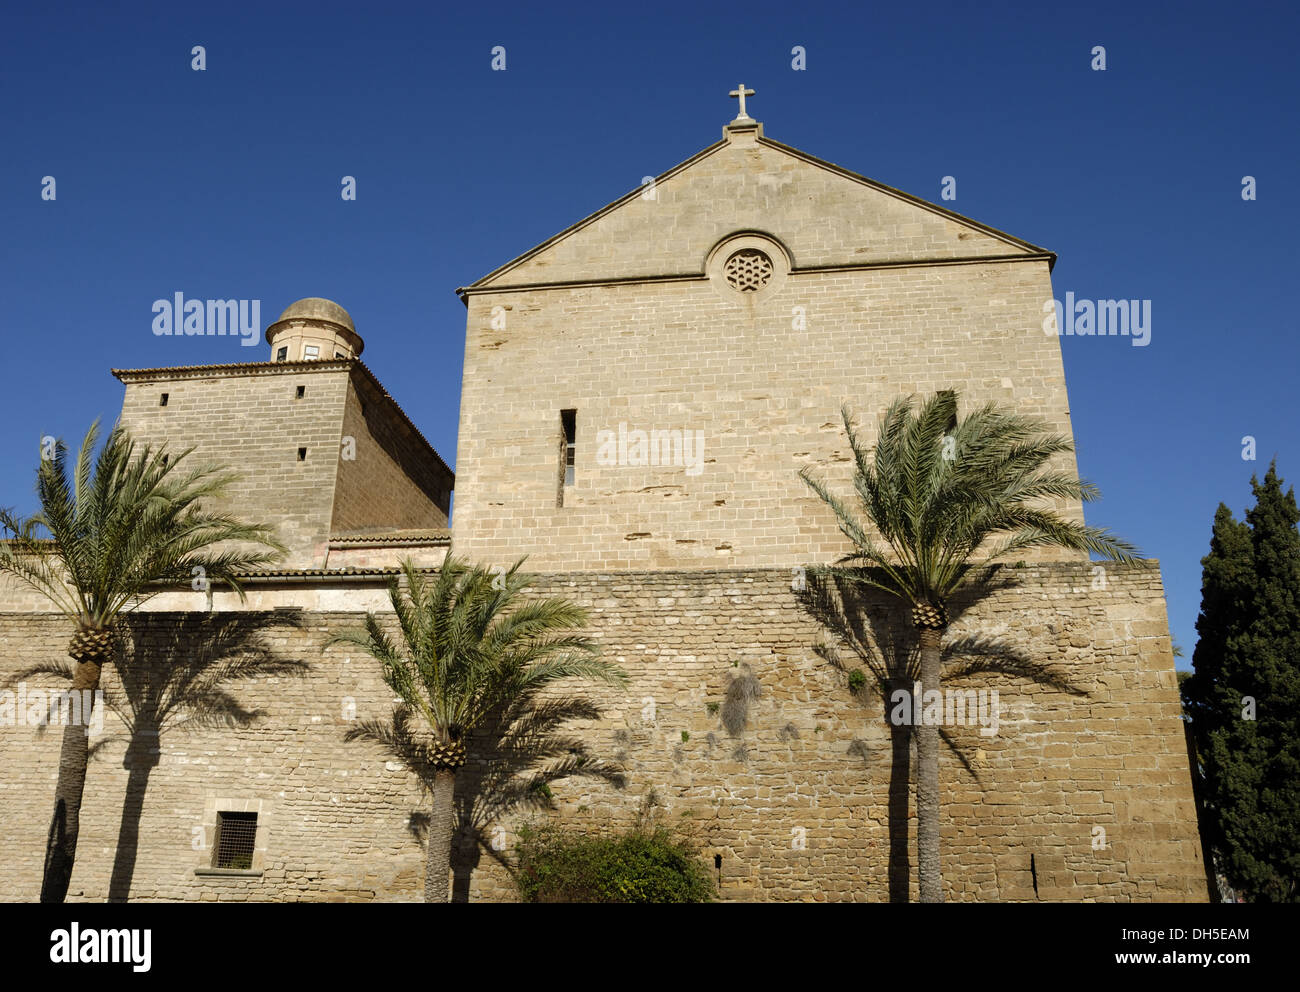 Esglesia de Sant Jaume in Alcudia Stock Photo